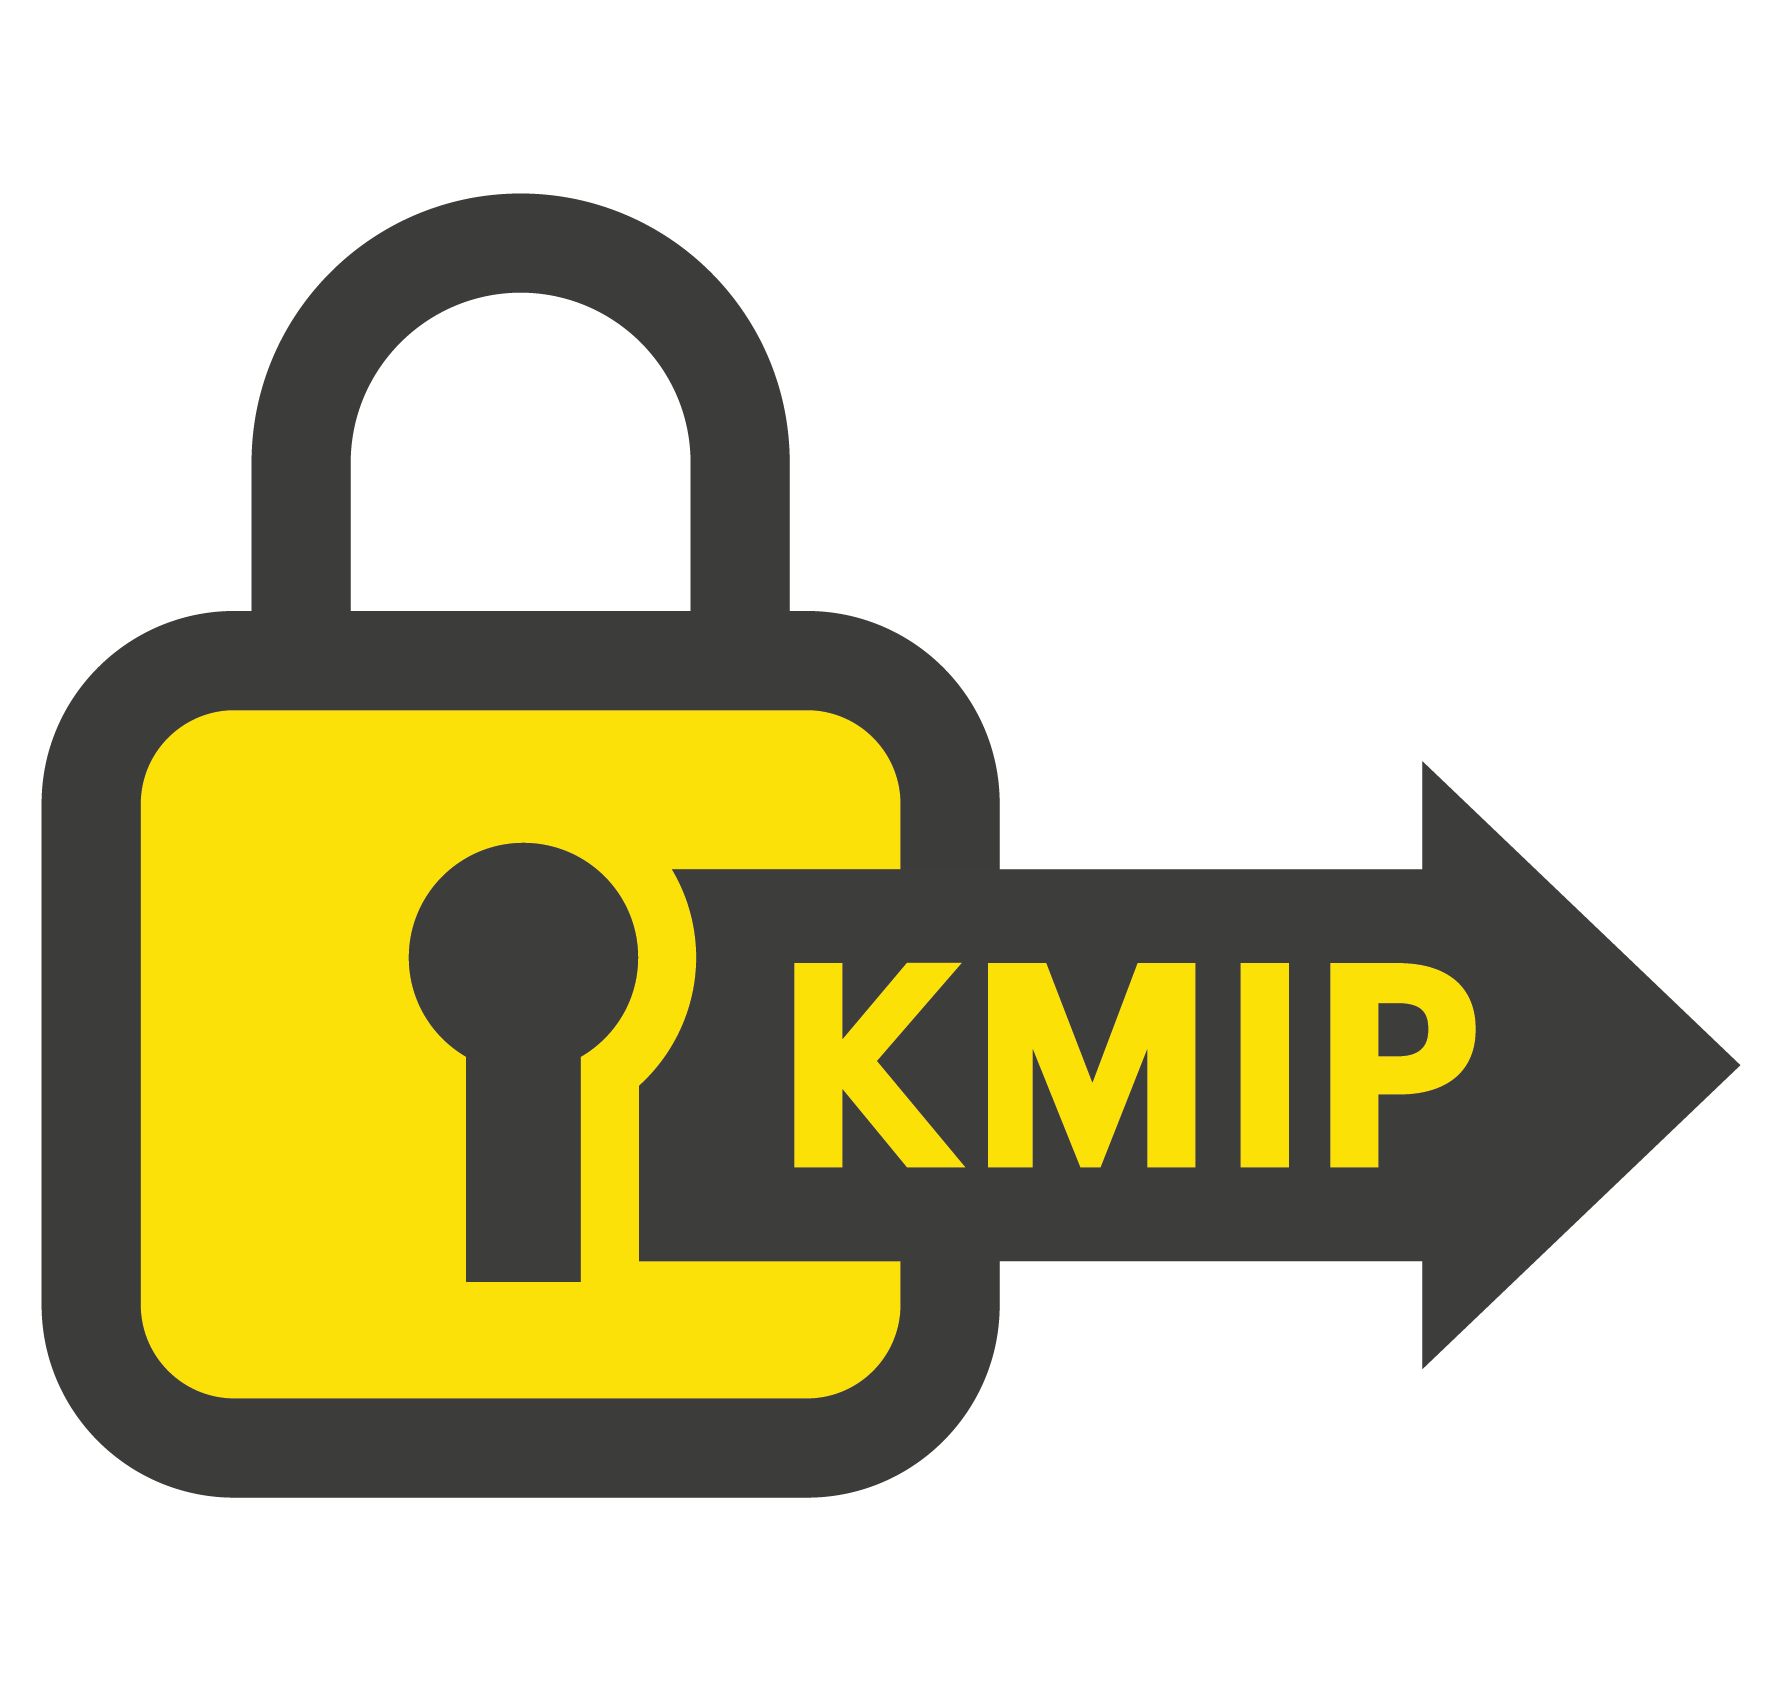 Supports open standard KMIP